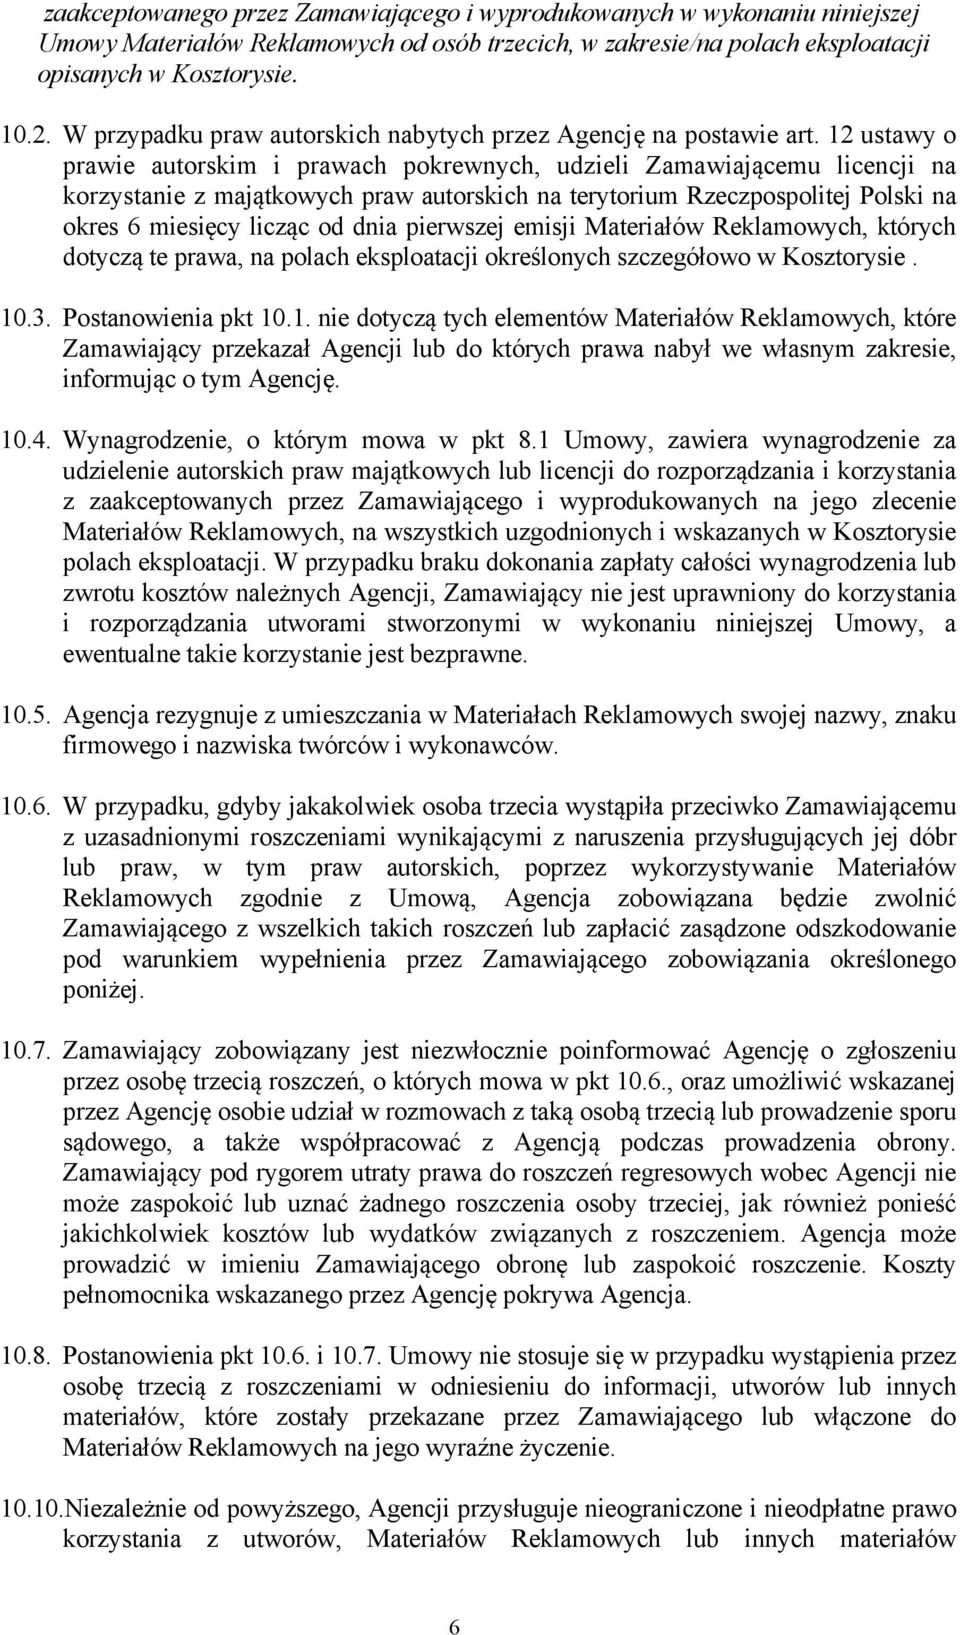 12 ustawy o prawie autorskim i prawach pokrewnych, udzieli Zamawiającemu licencji na korzystanie z majątkowych praw autorskich na terytorium Rzeczpospolitej Polski na okres 6 miesięcy licząc od dnia